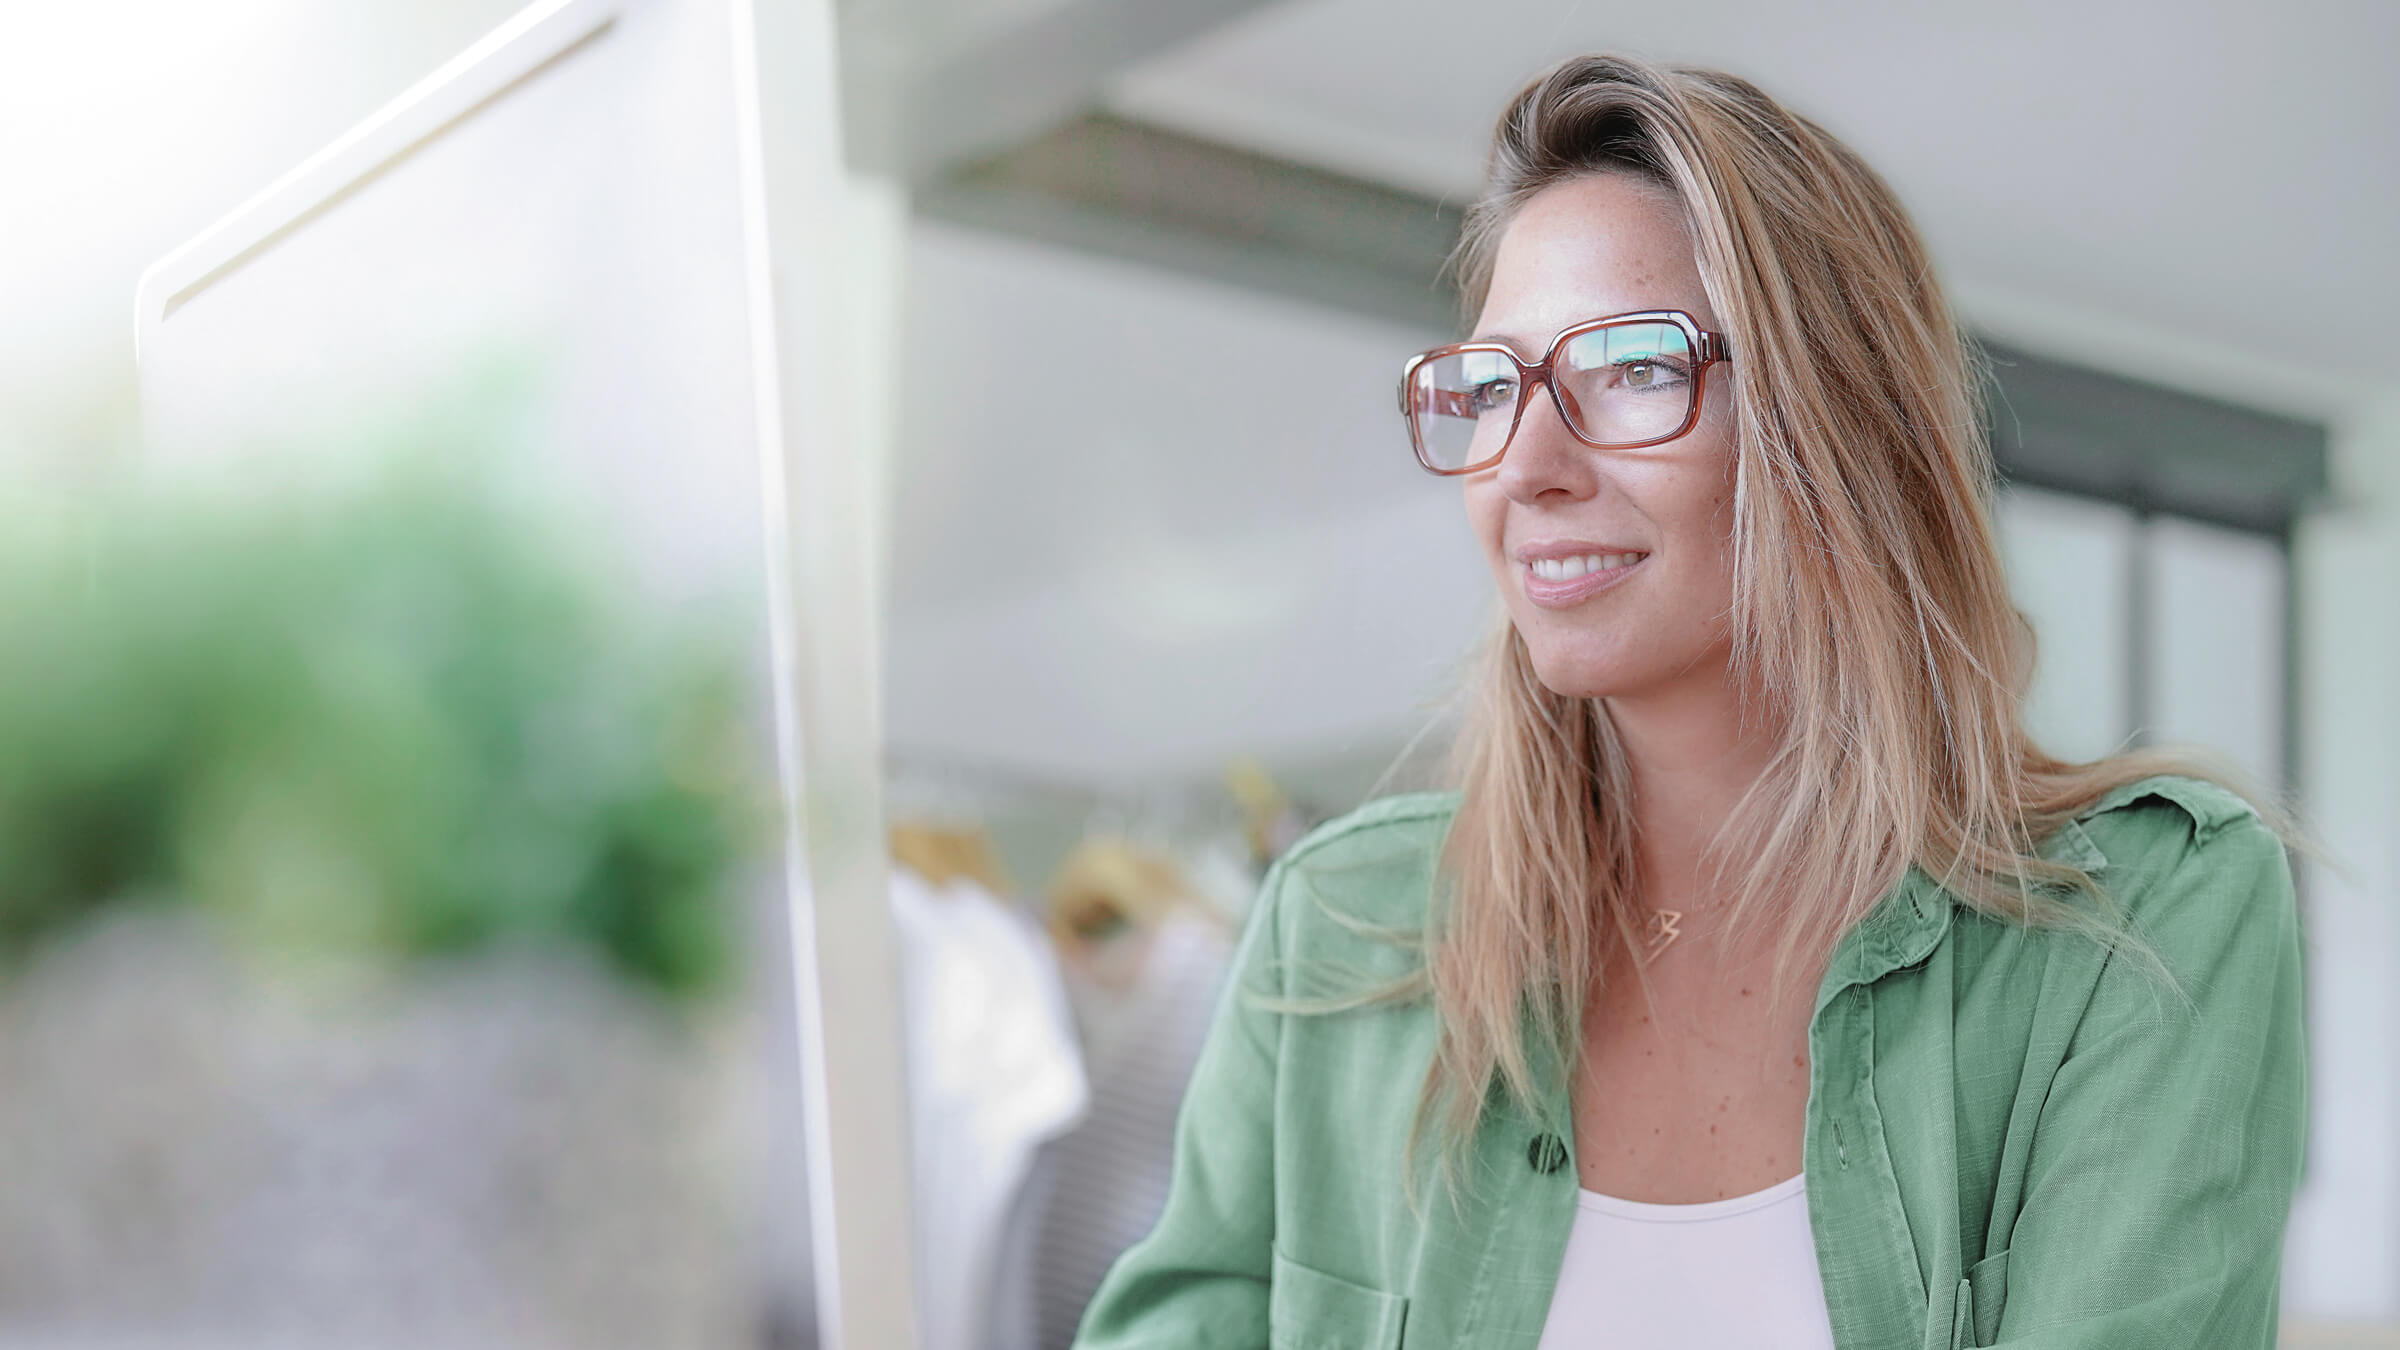 Spokojená klientka LYNX v zelené košili s brýlemi, která investuje do certifikátů